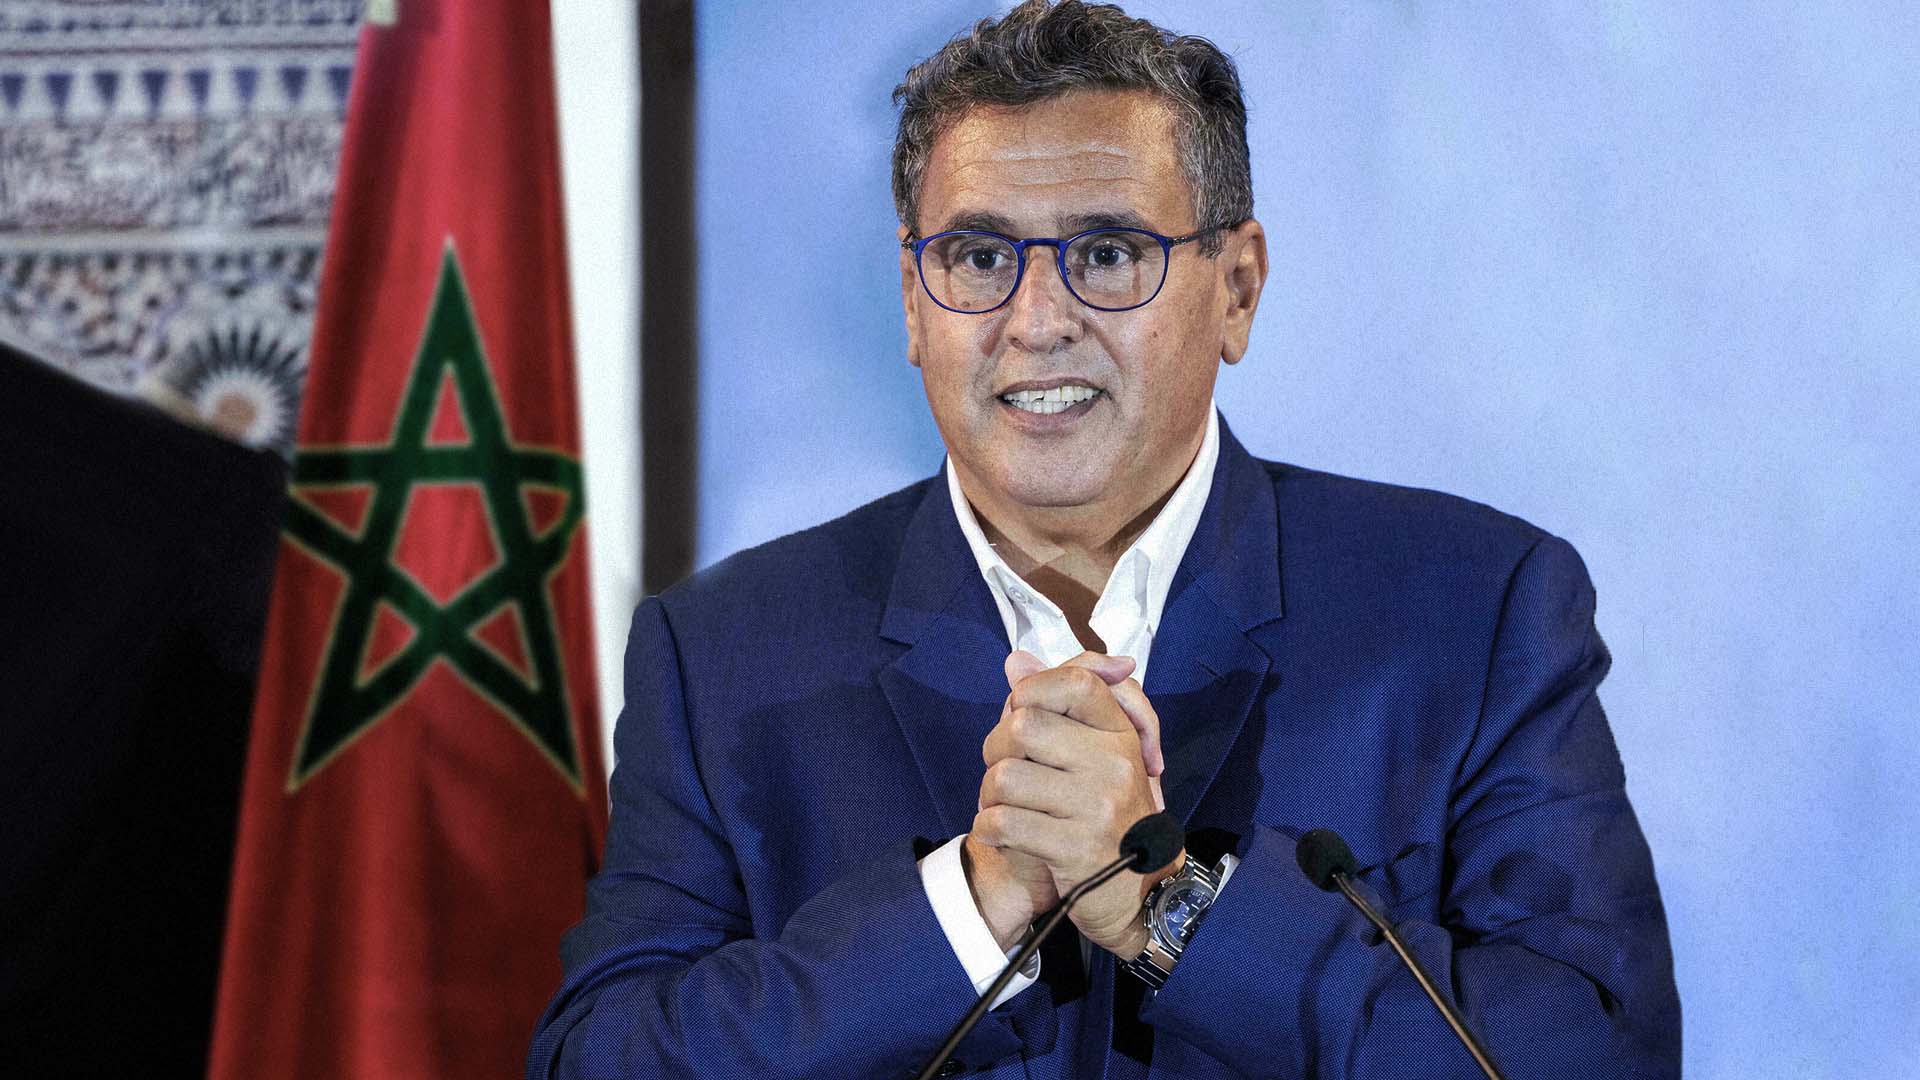 صورة المغرب: حزب التجمع الوطني يعد المواطنين بخطة محكمة لتنمية ثروات أصحاب رؤوس الأموال